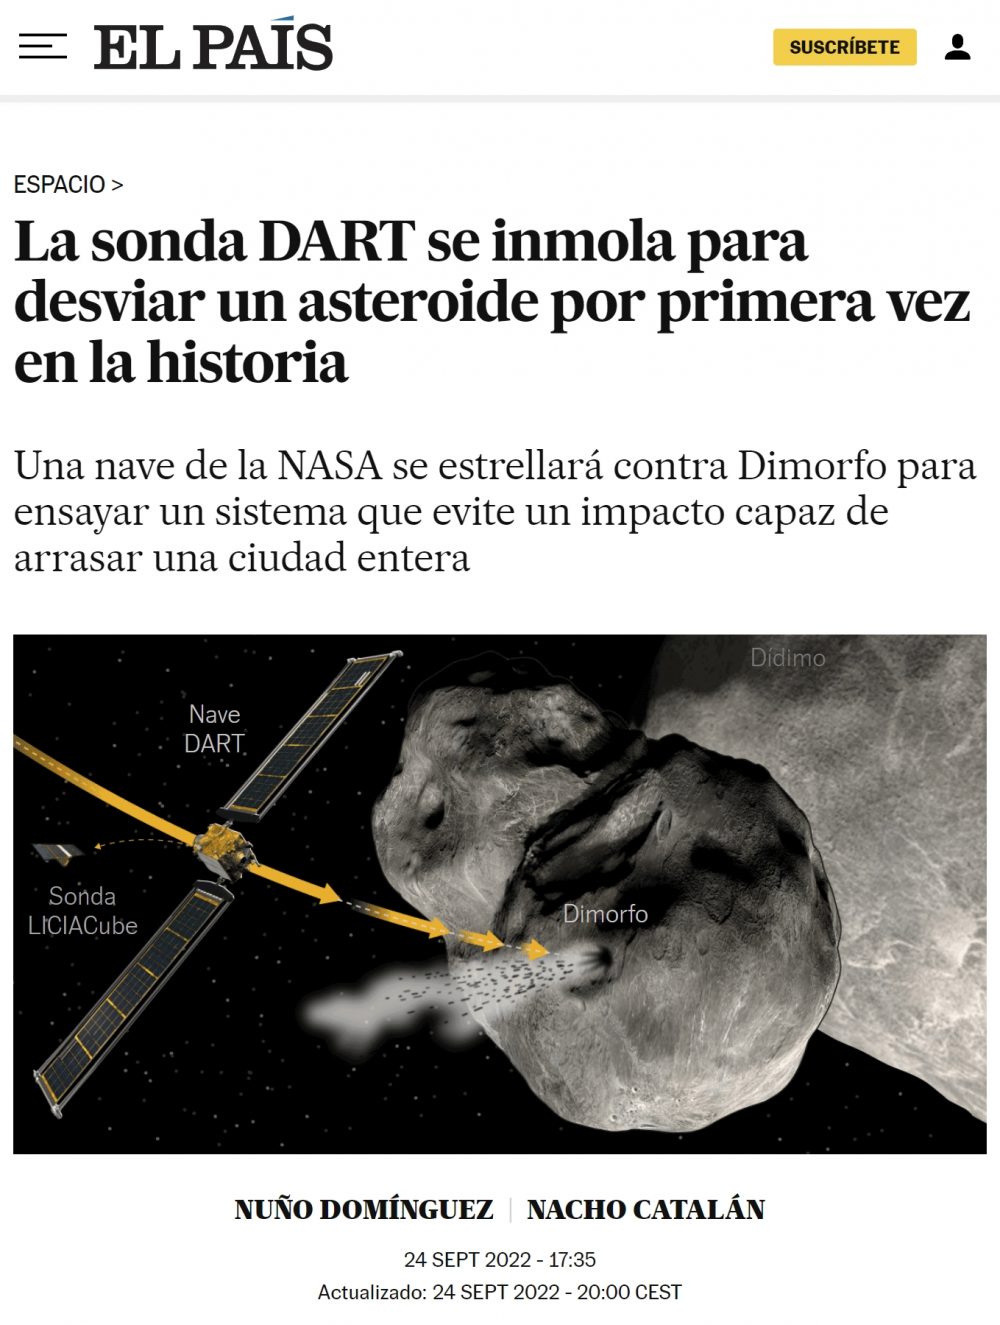 La NASA va a hacer un simulacro: pretenden desviar un asteroide inmolando la sonda DART